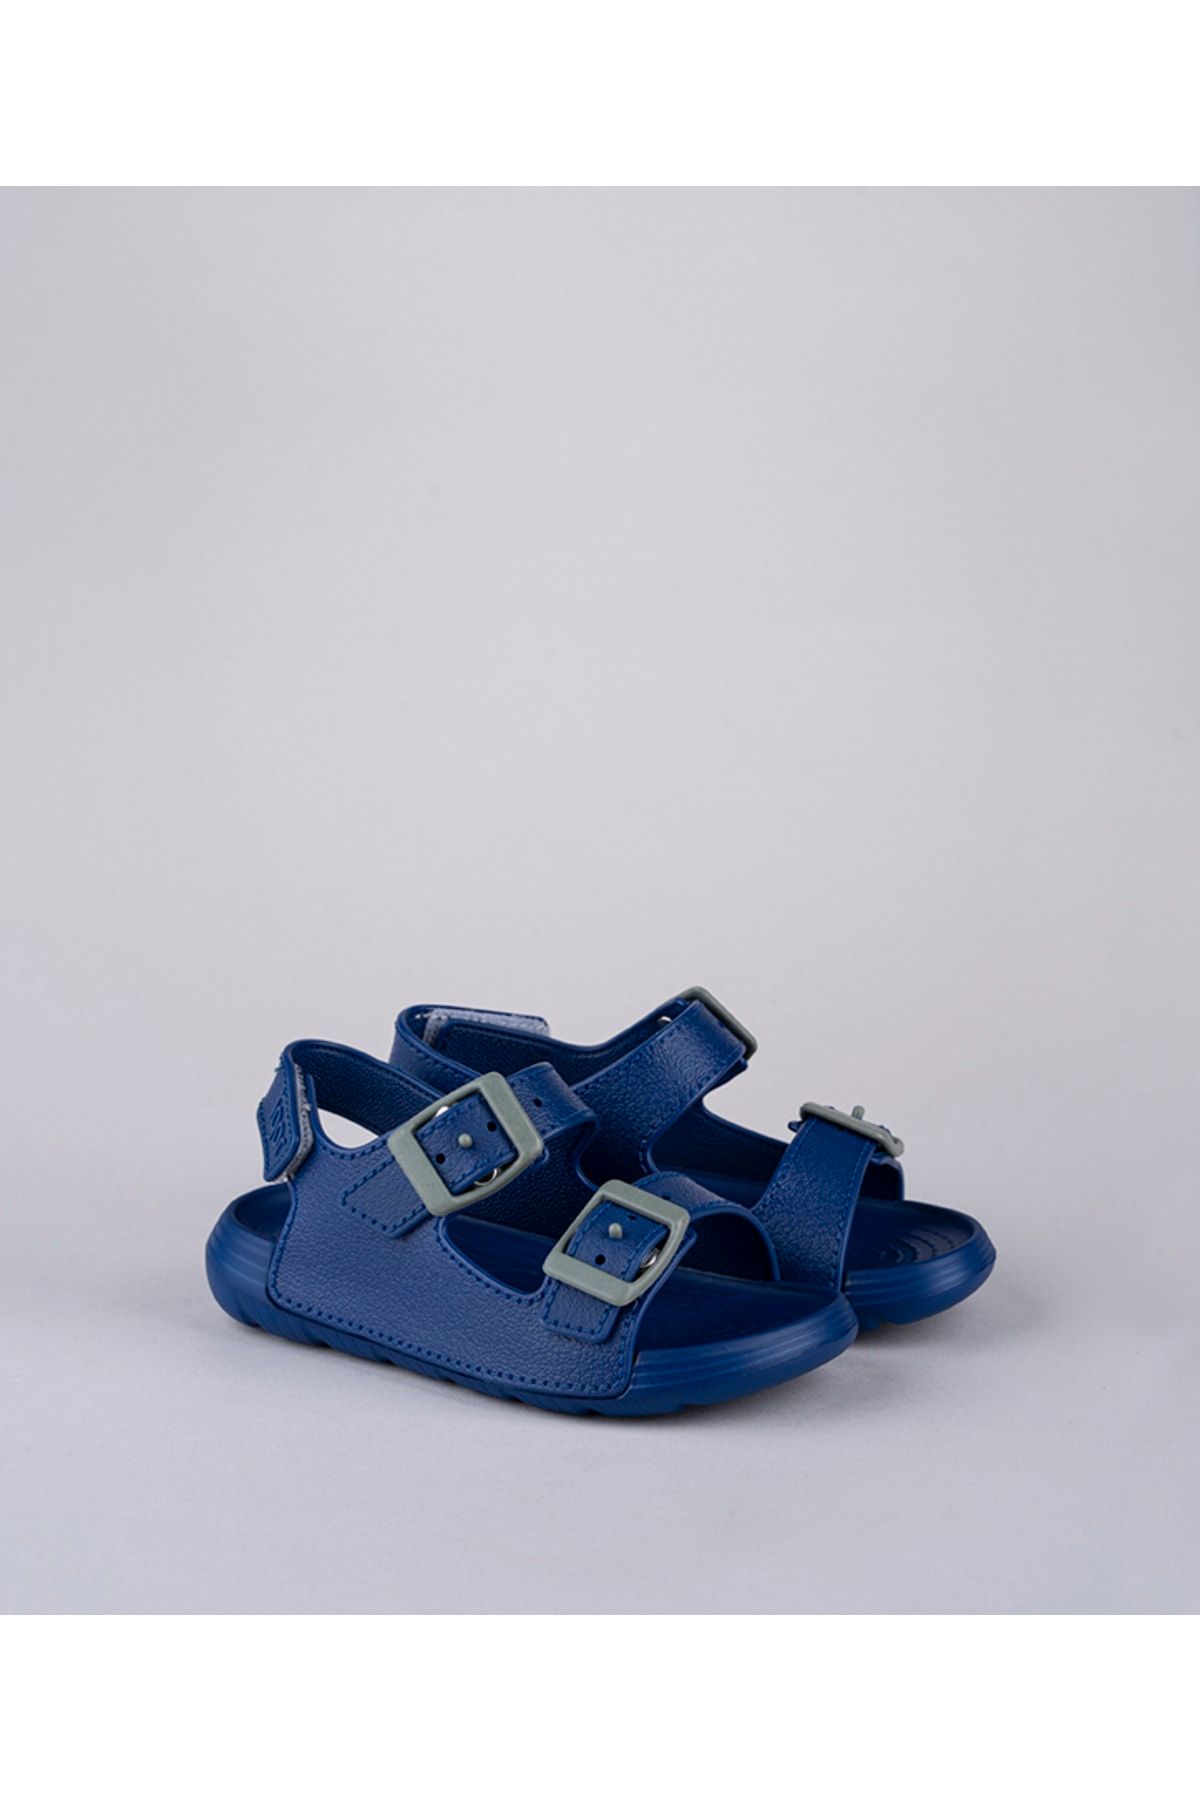 IGOR S10299 Mauı Azulon/lacivert Çocuk Sandalet Igr242